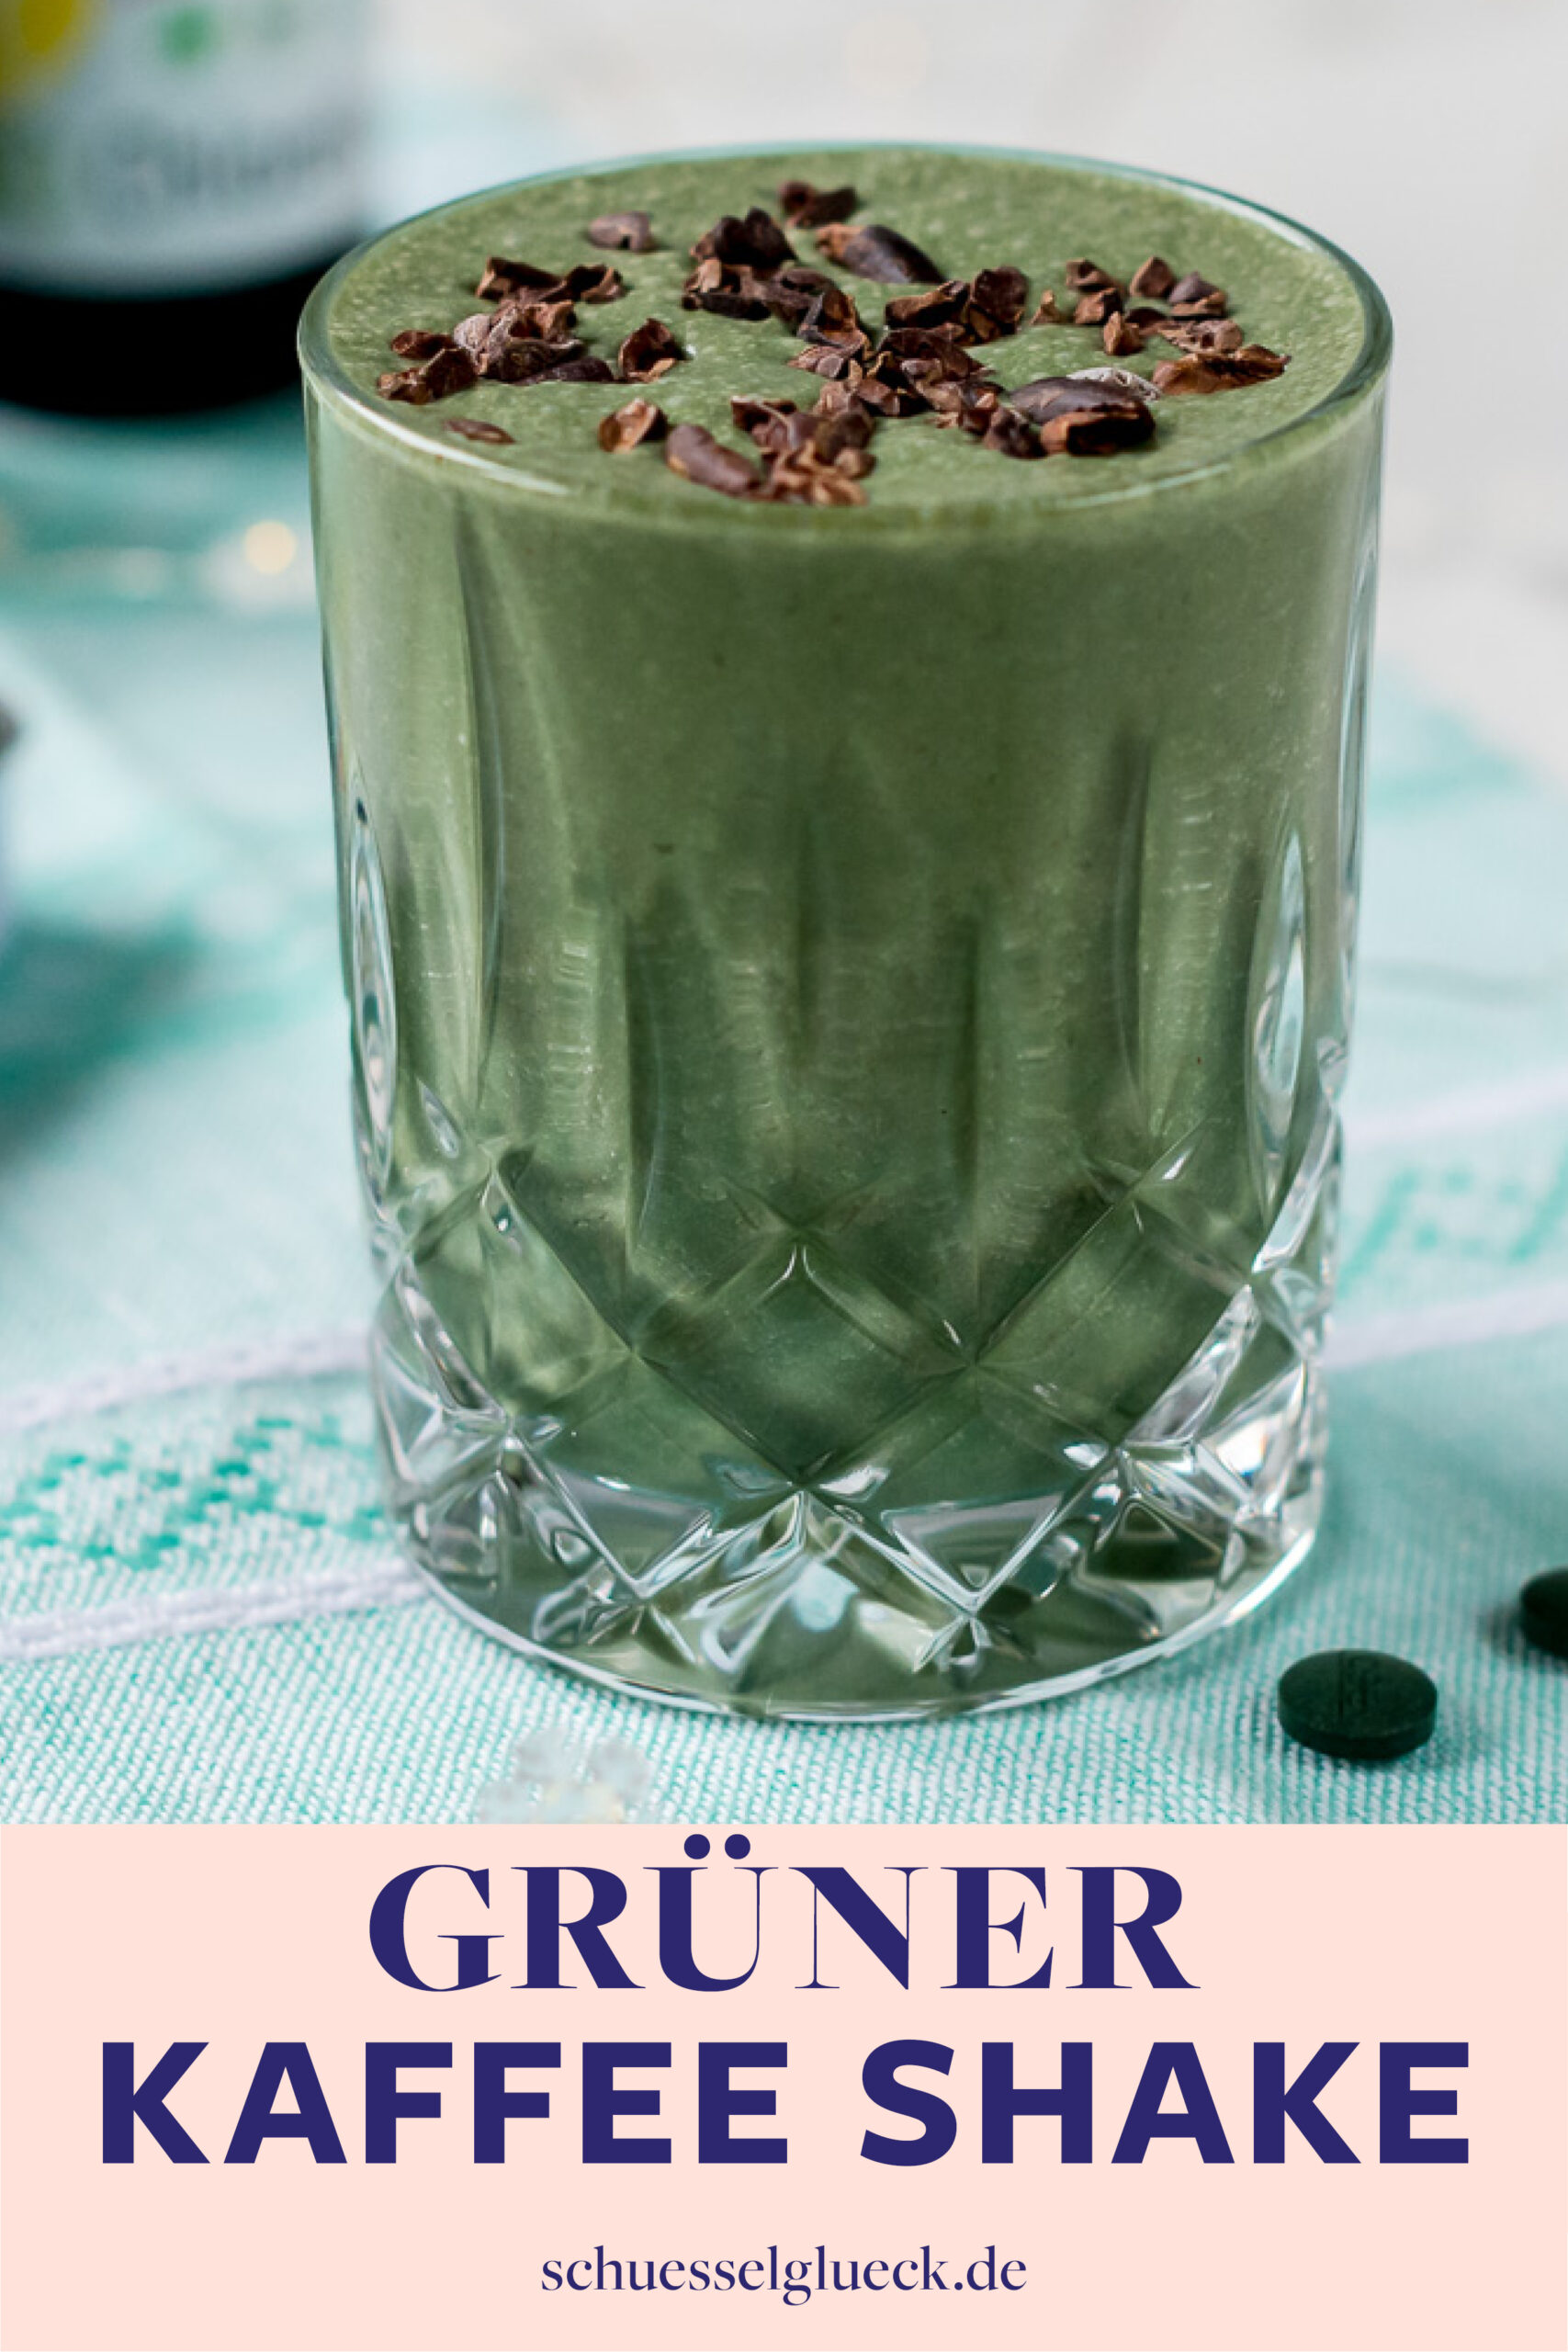 Grüner Kaffee Shake mit Chlorella und Spirulina + alles was Du über das Superfood aus dem Wasser wissen musst